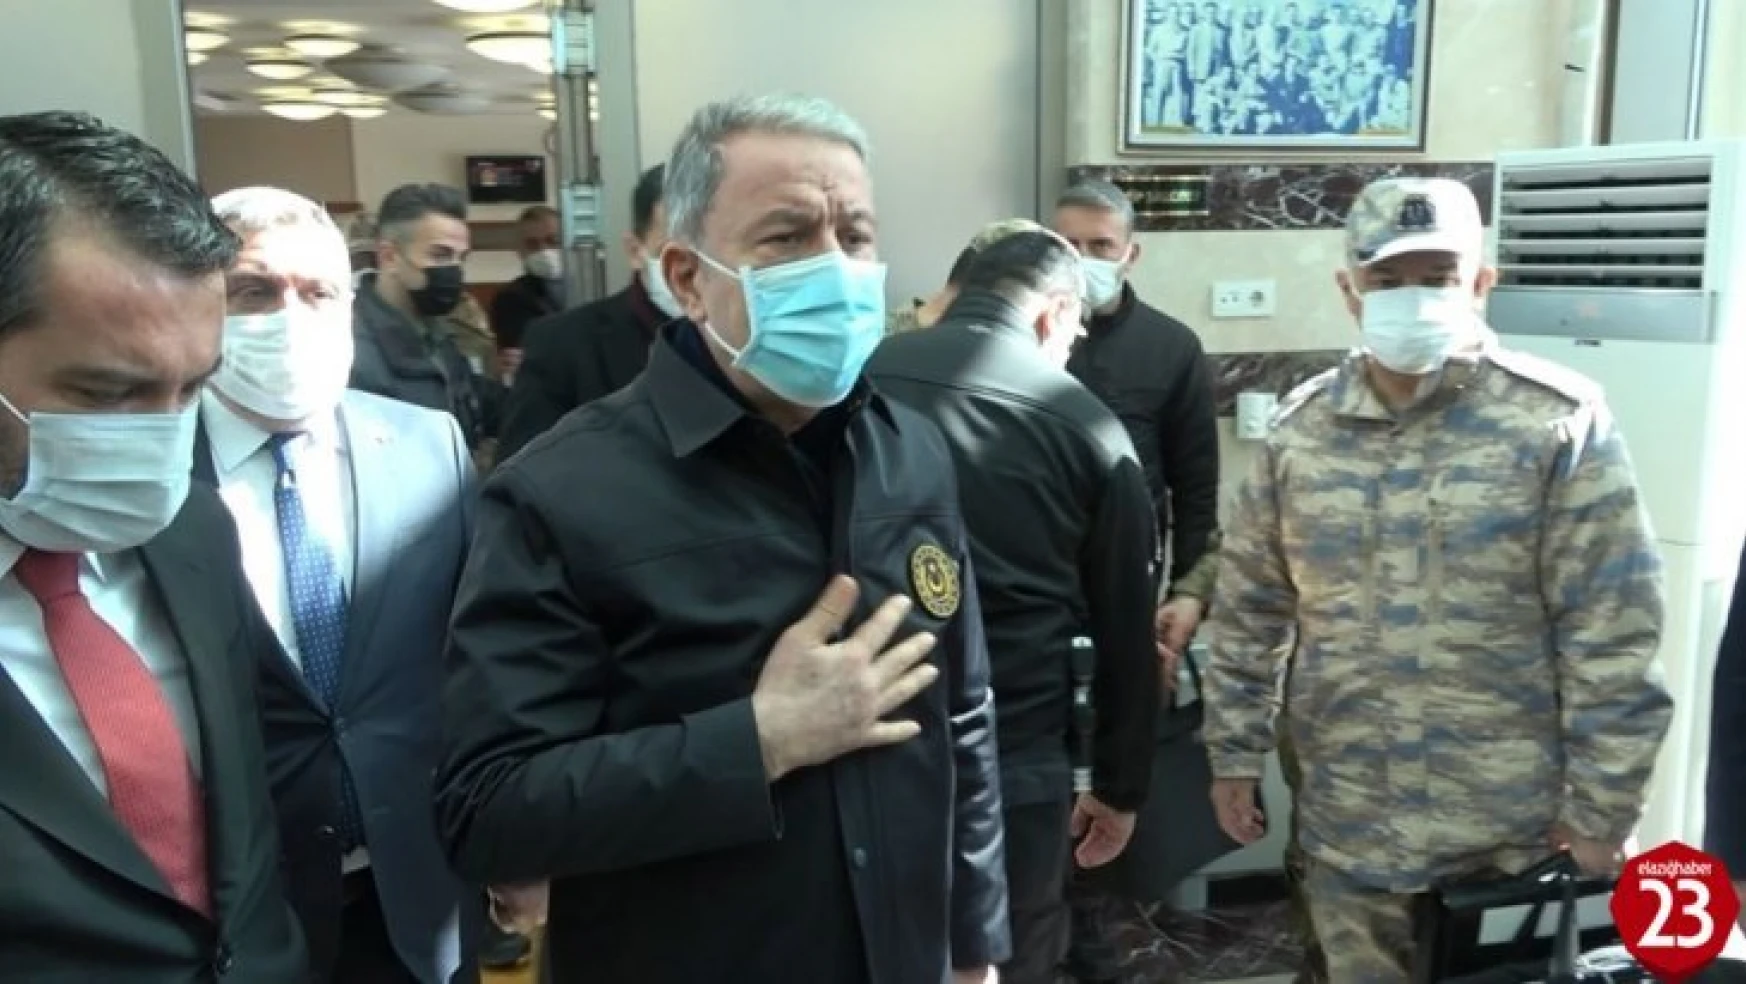 Milli Savunma Bakanı Akar: 'Yaralıların durumu şu an iyi ve kontrol altında'